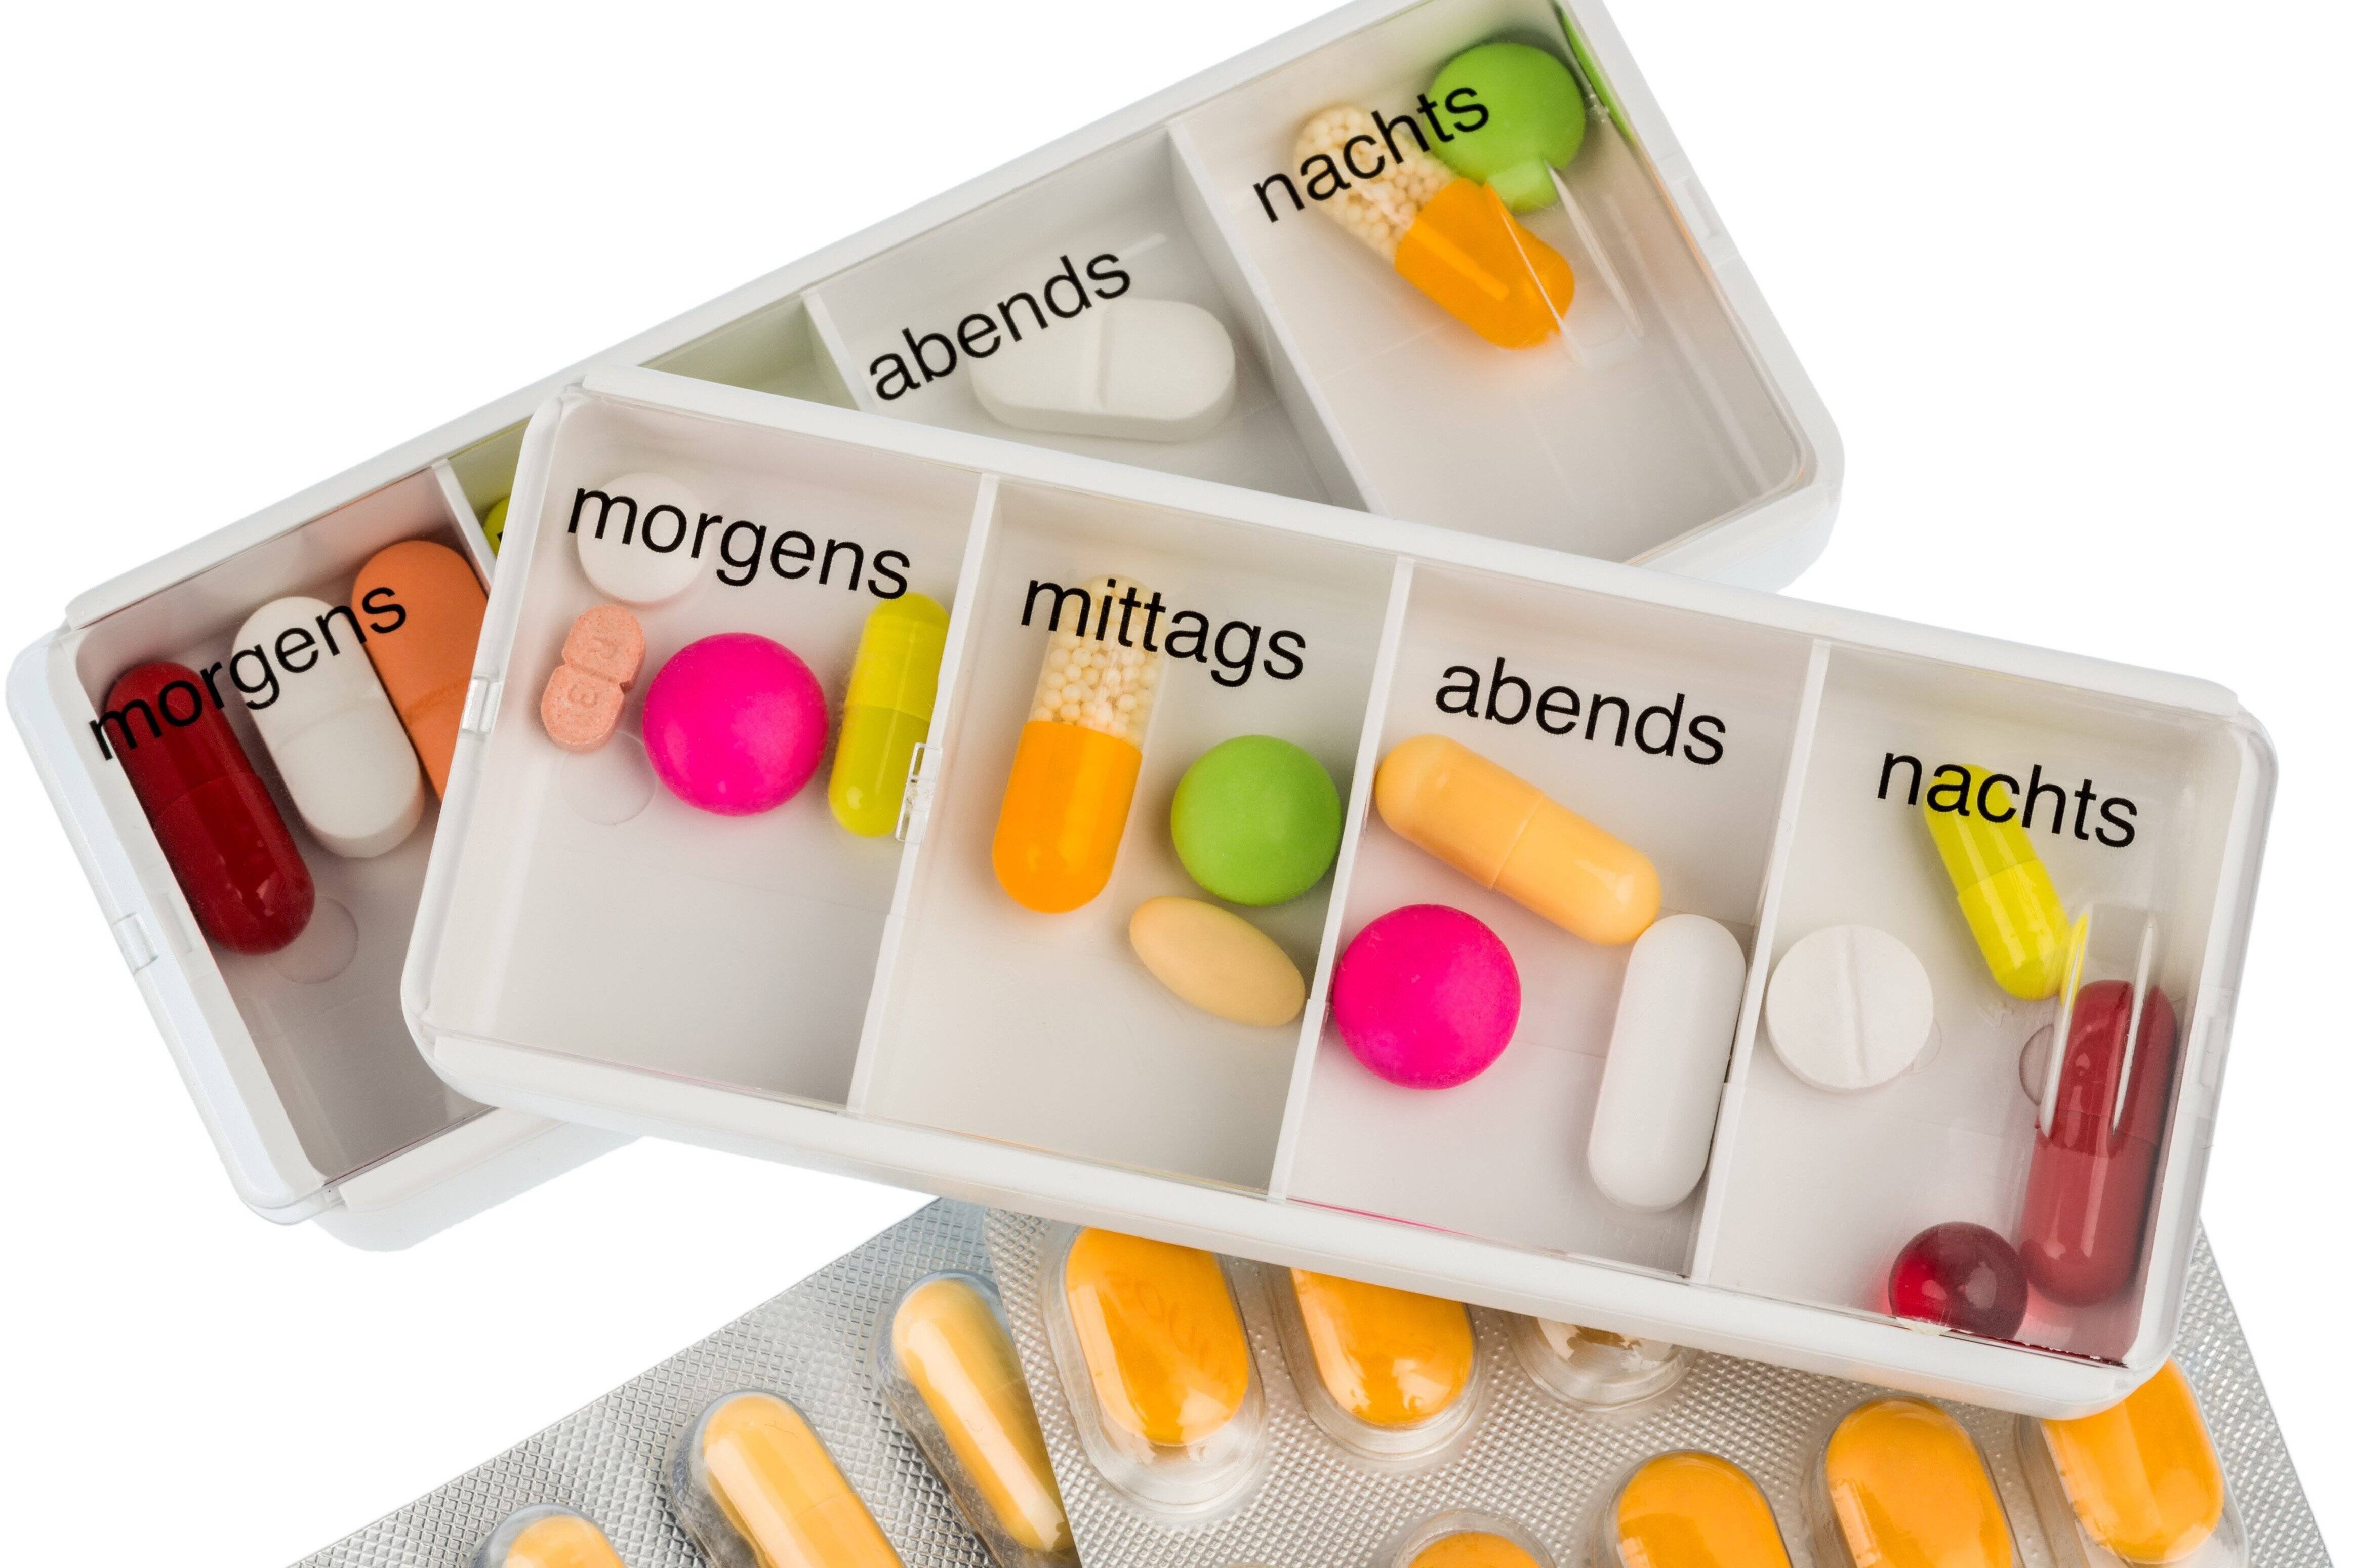 Ein Tablettenspender mit Fächern für morgens, mittags und abends. Darin sind viele bunte Pillen und Tabletten.